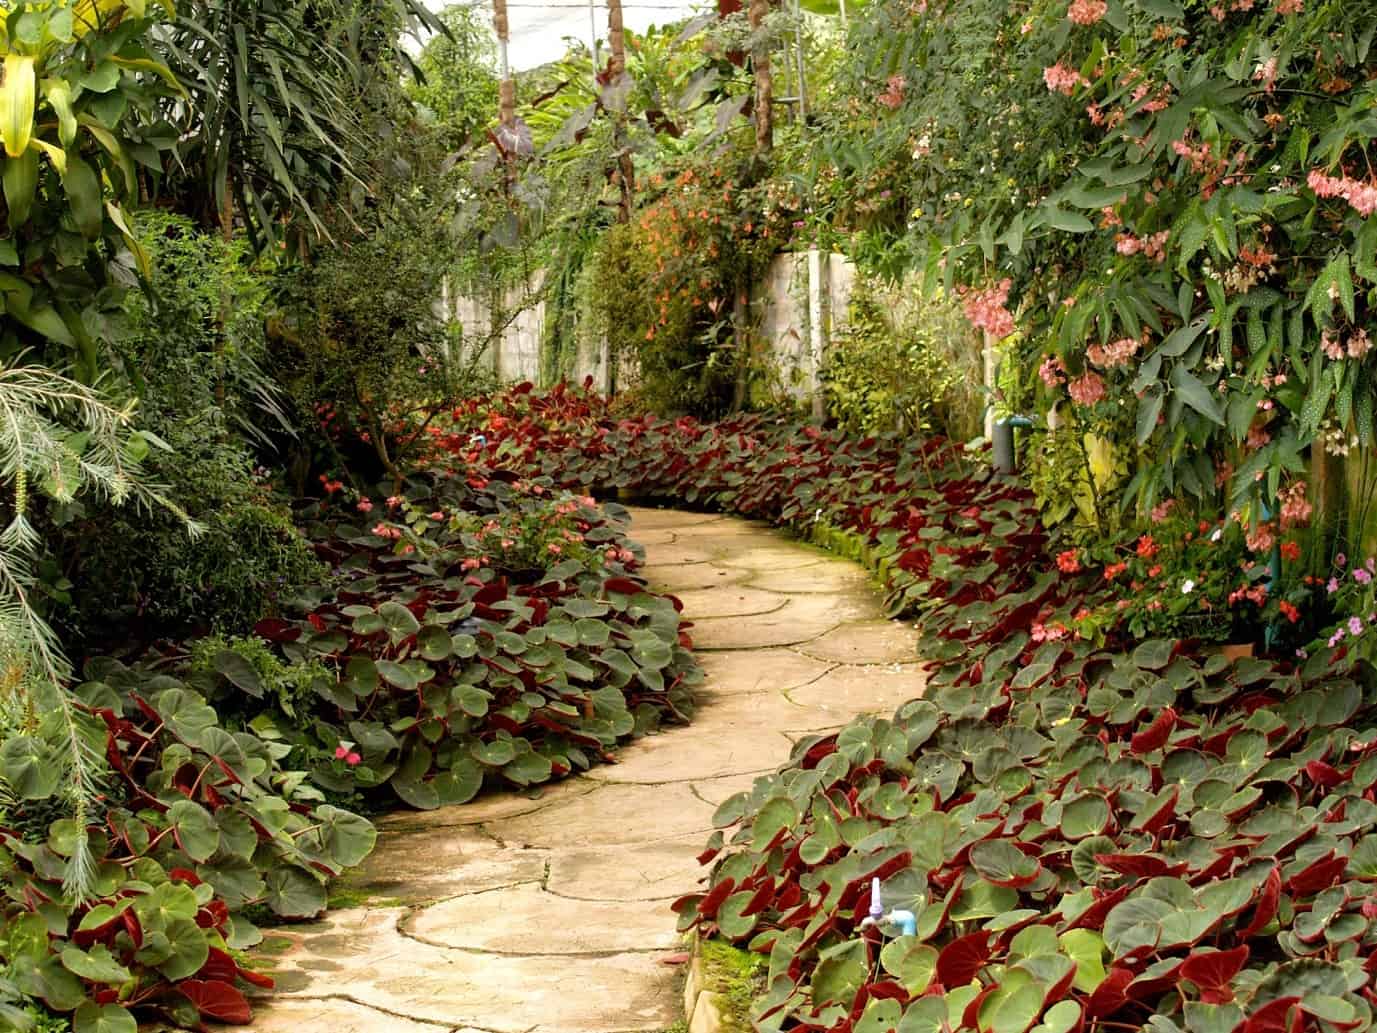 walkway in garden